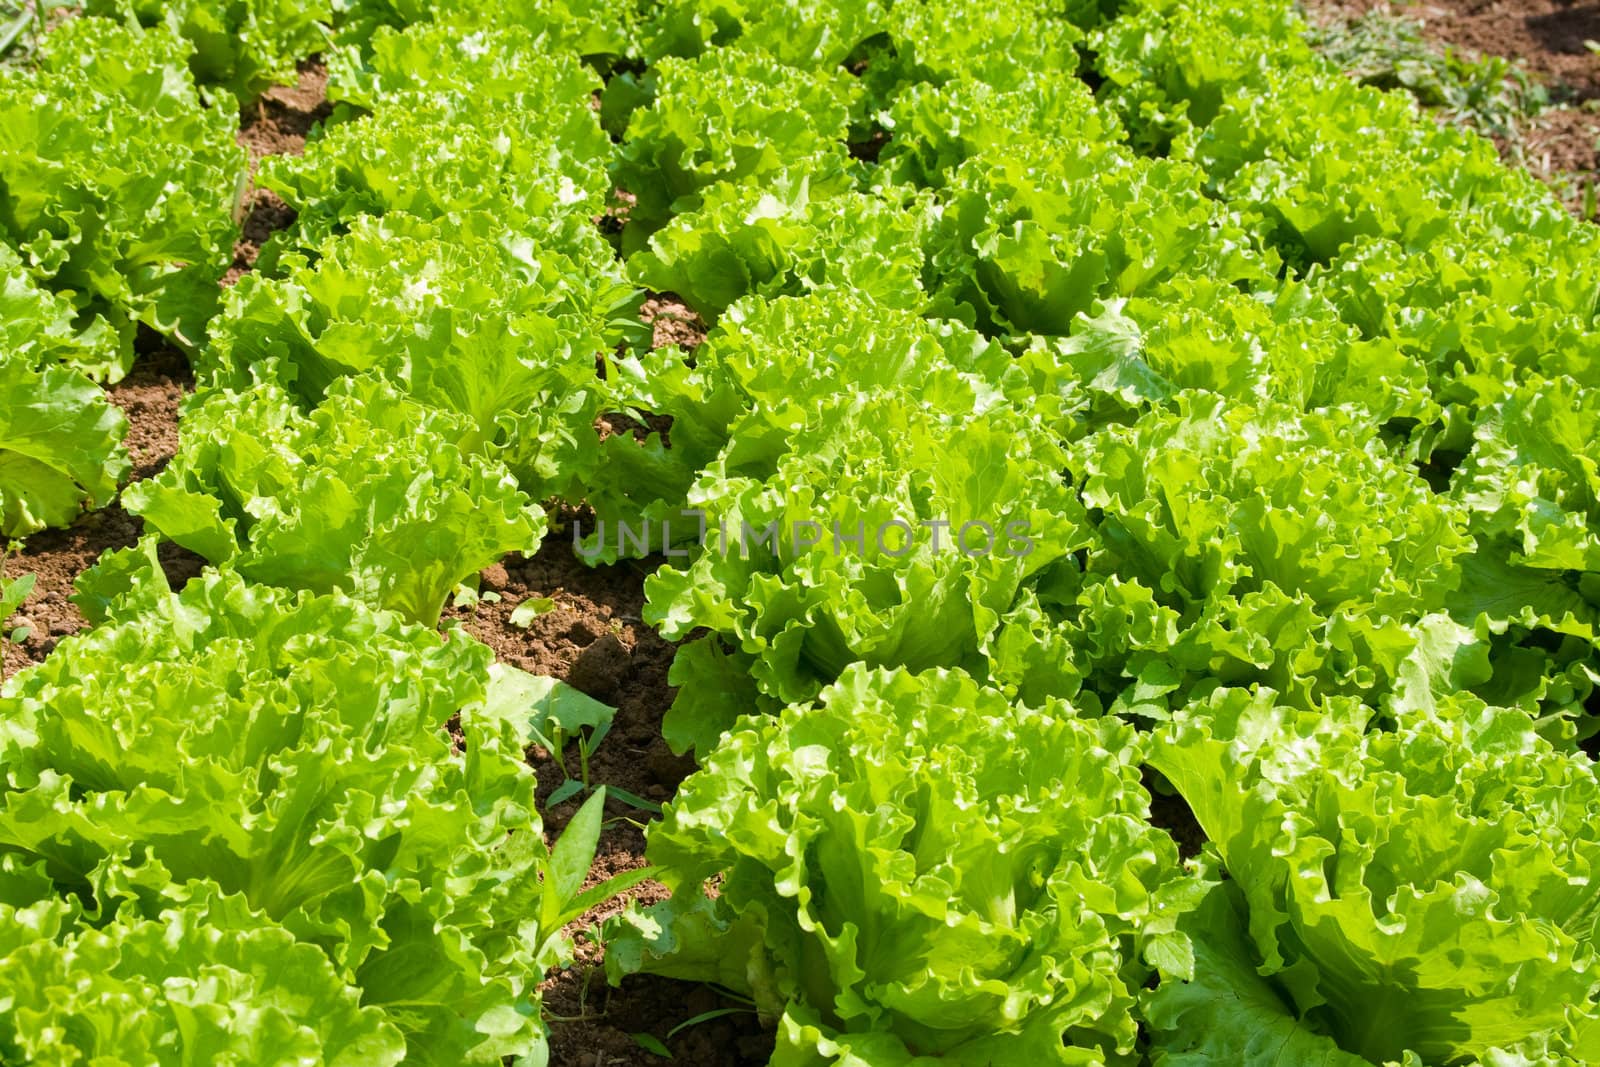 Healthy home lettuce in rows in garden.